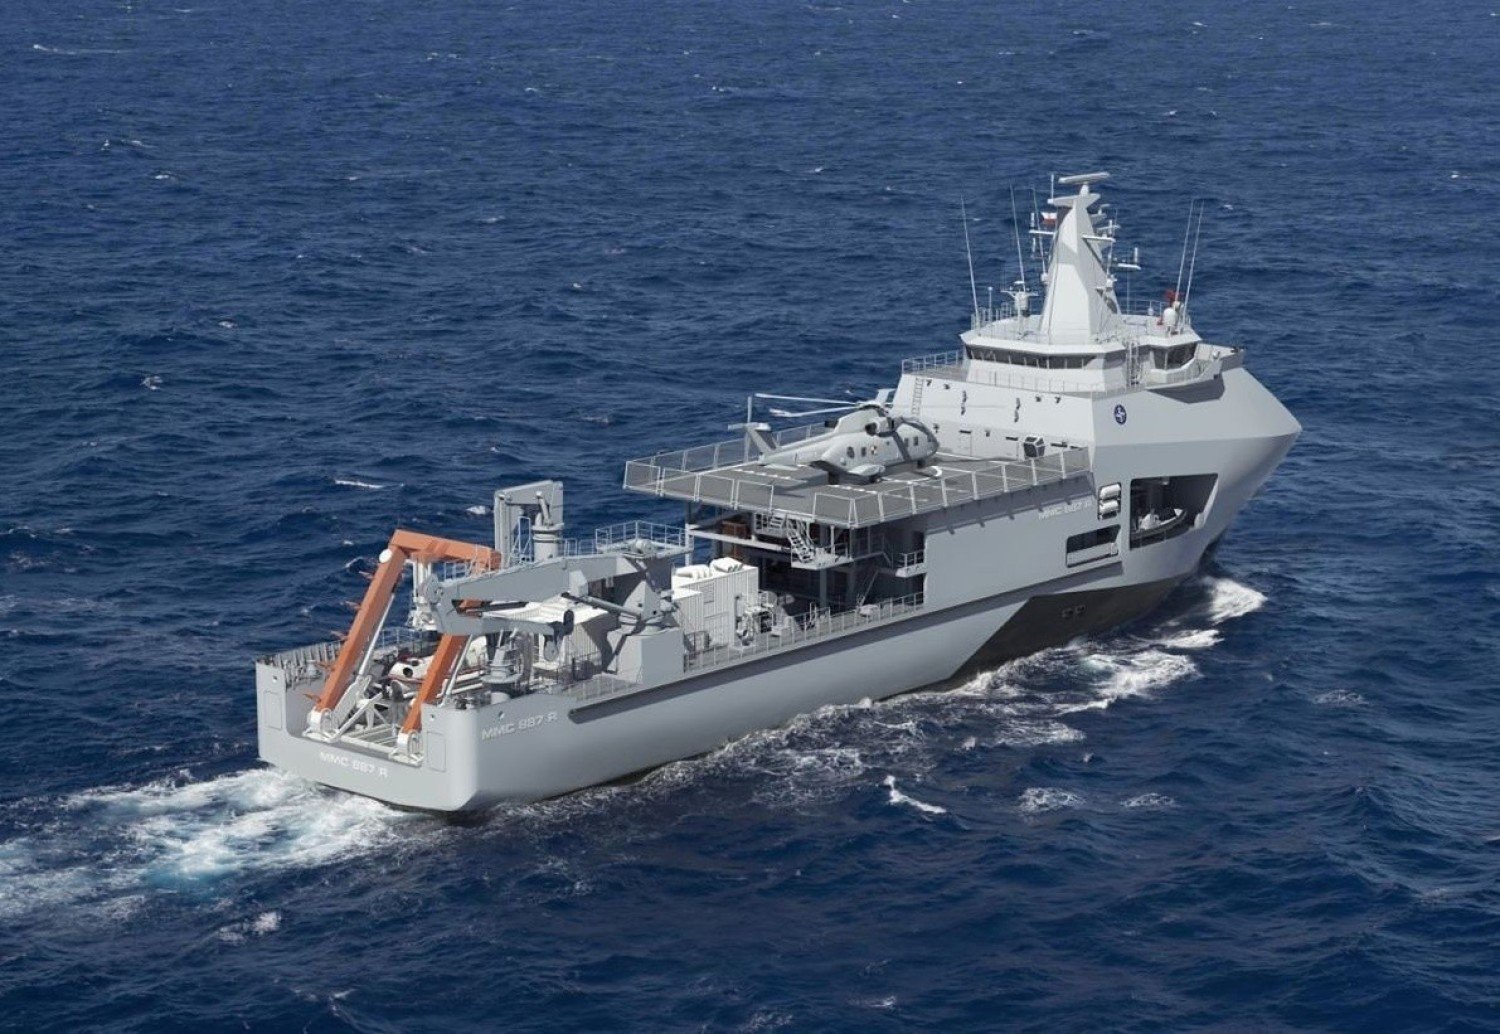 MON stać na Program Ratownik? Nowy okręt dla Marynarki Wojennej - resort  zaprasza Polską Grupę Zbrojeniową do negocjacji | Gdynia Nasze Miasto